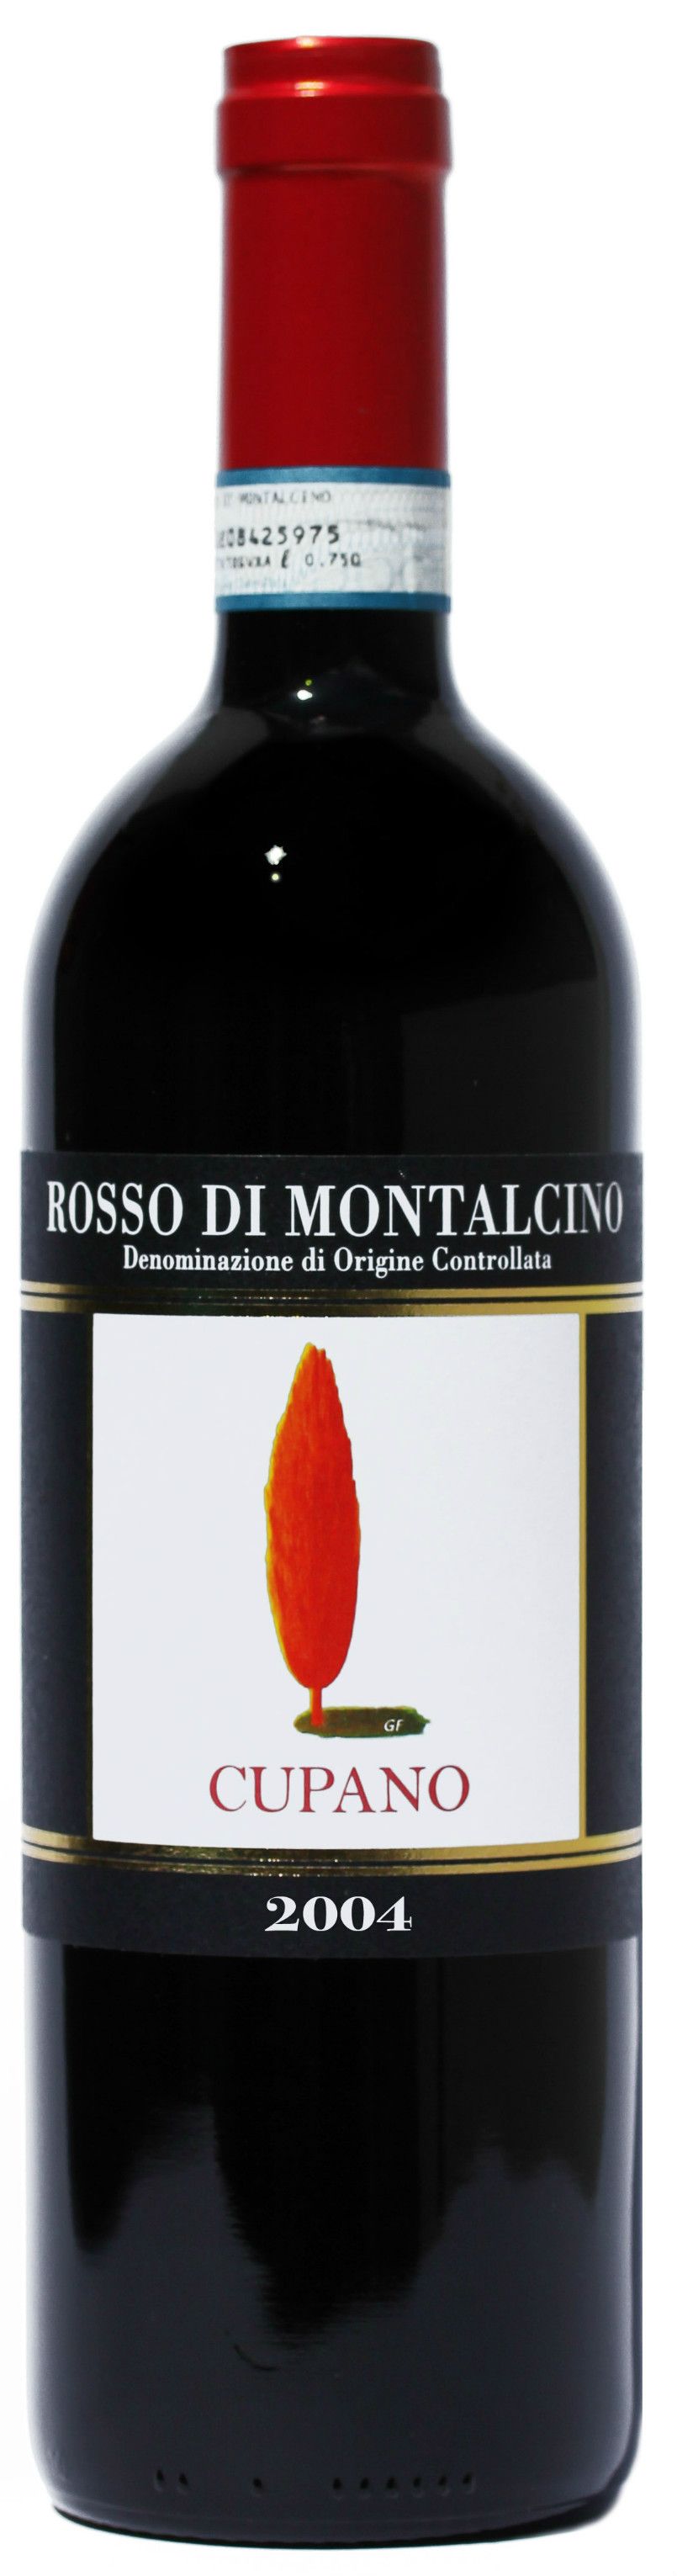 Cupano, Rosso Di Montalcino, 2004